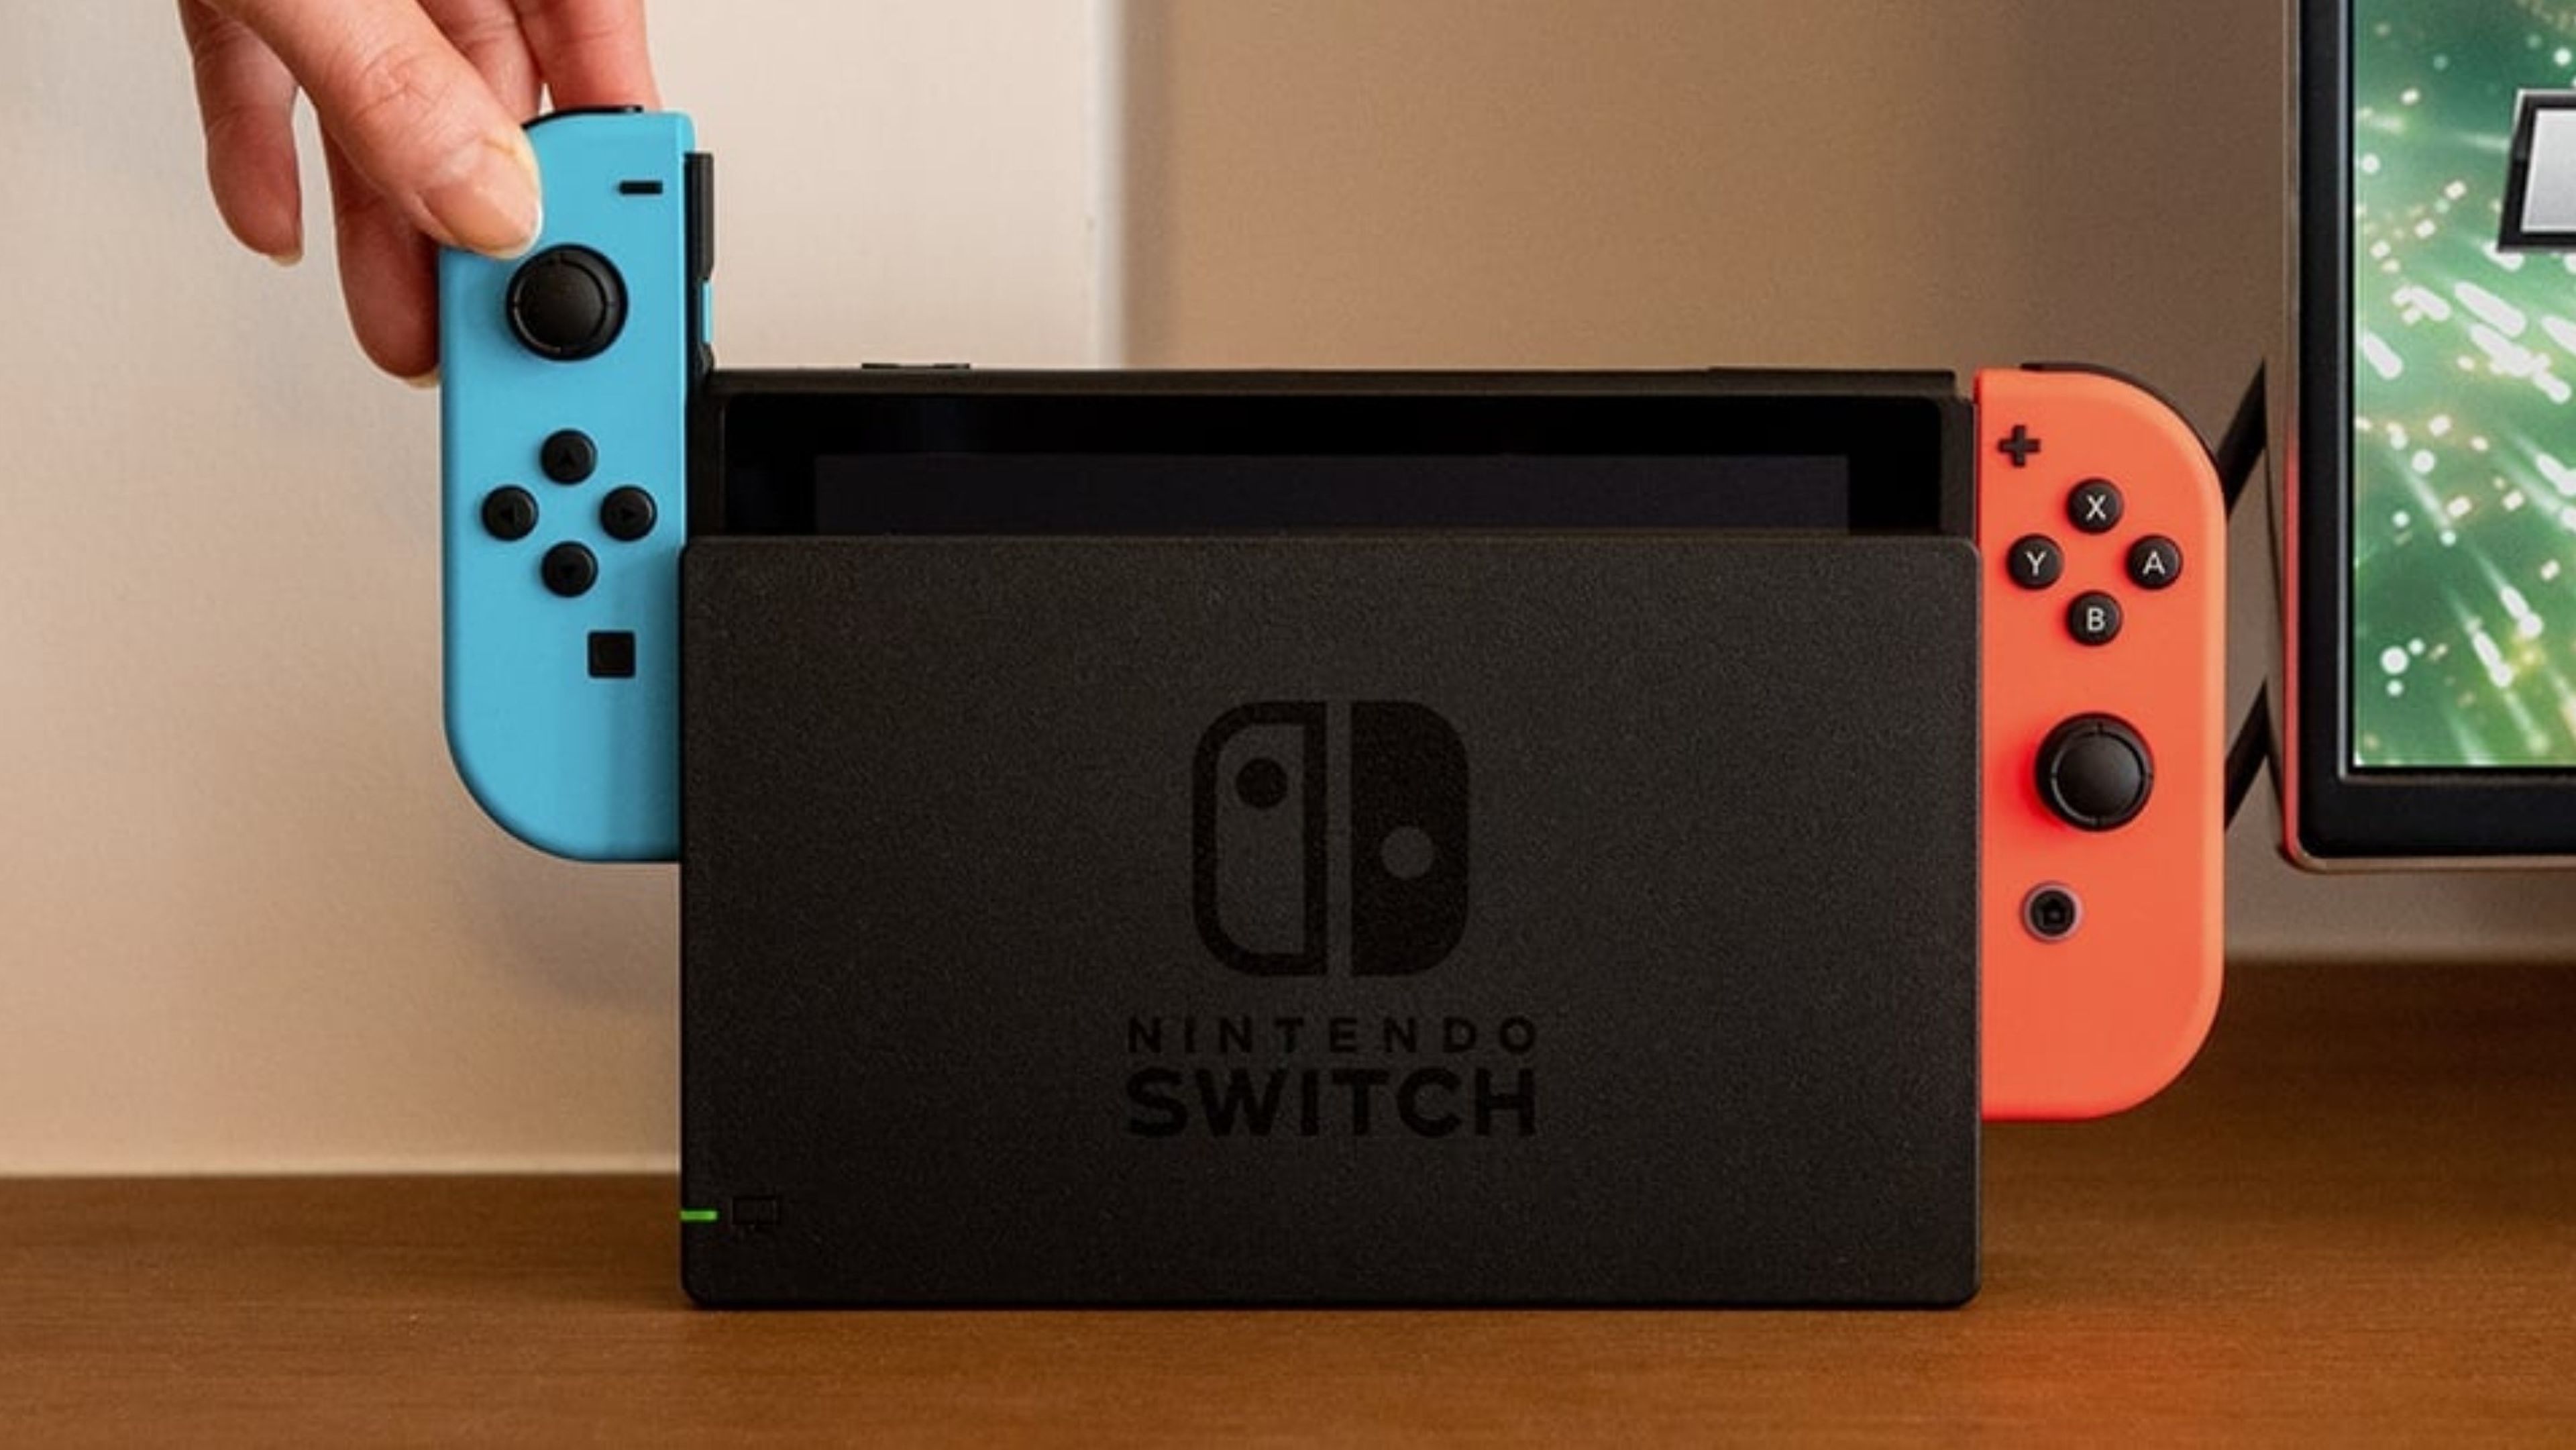 Nintendo Switch: conoce todas sus características y juegos